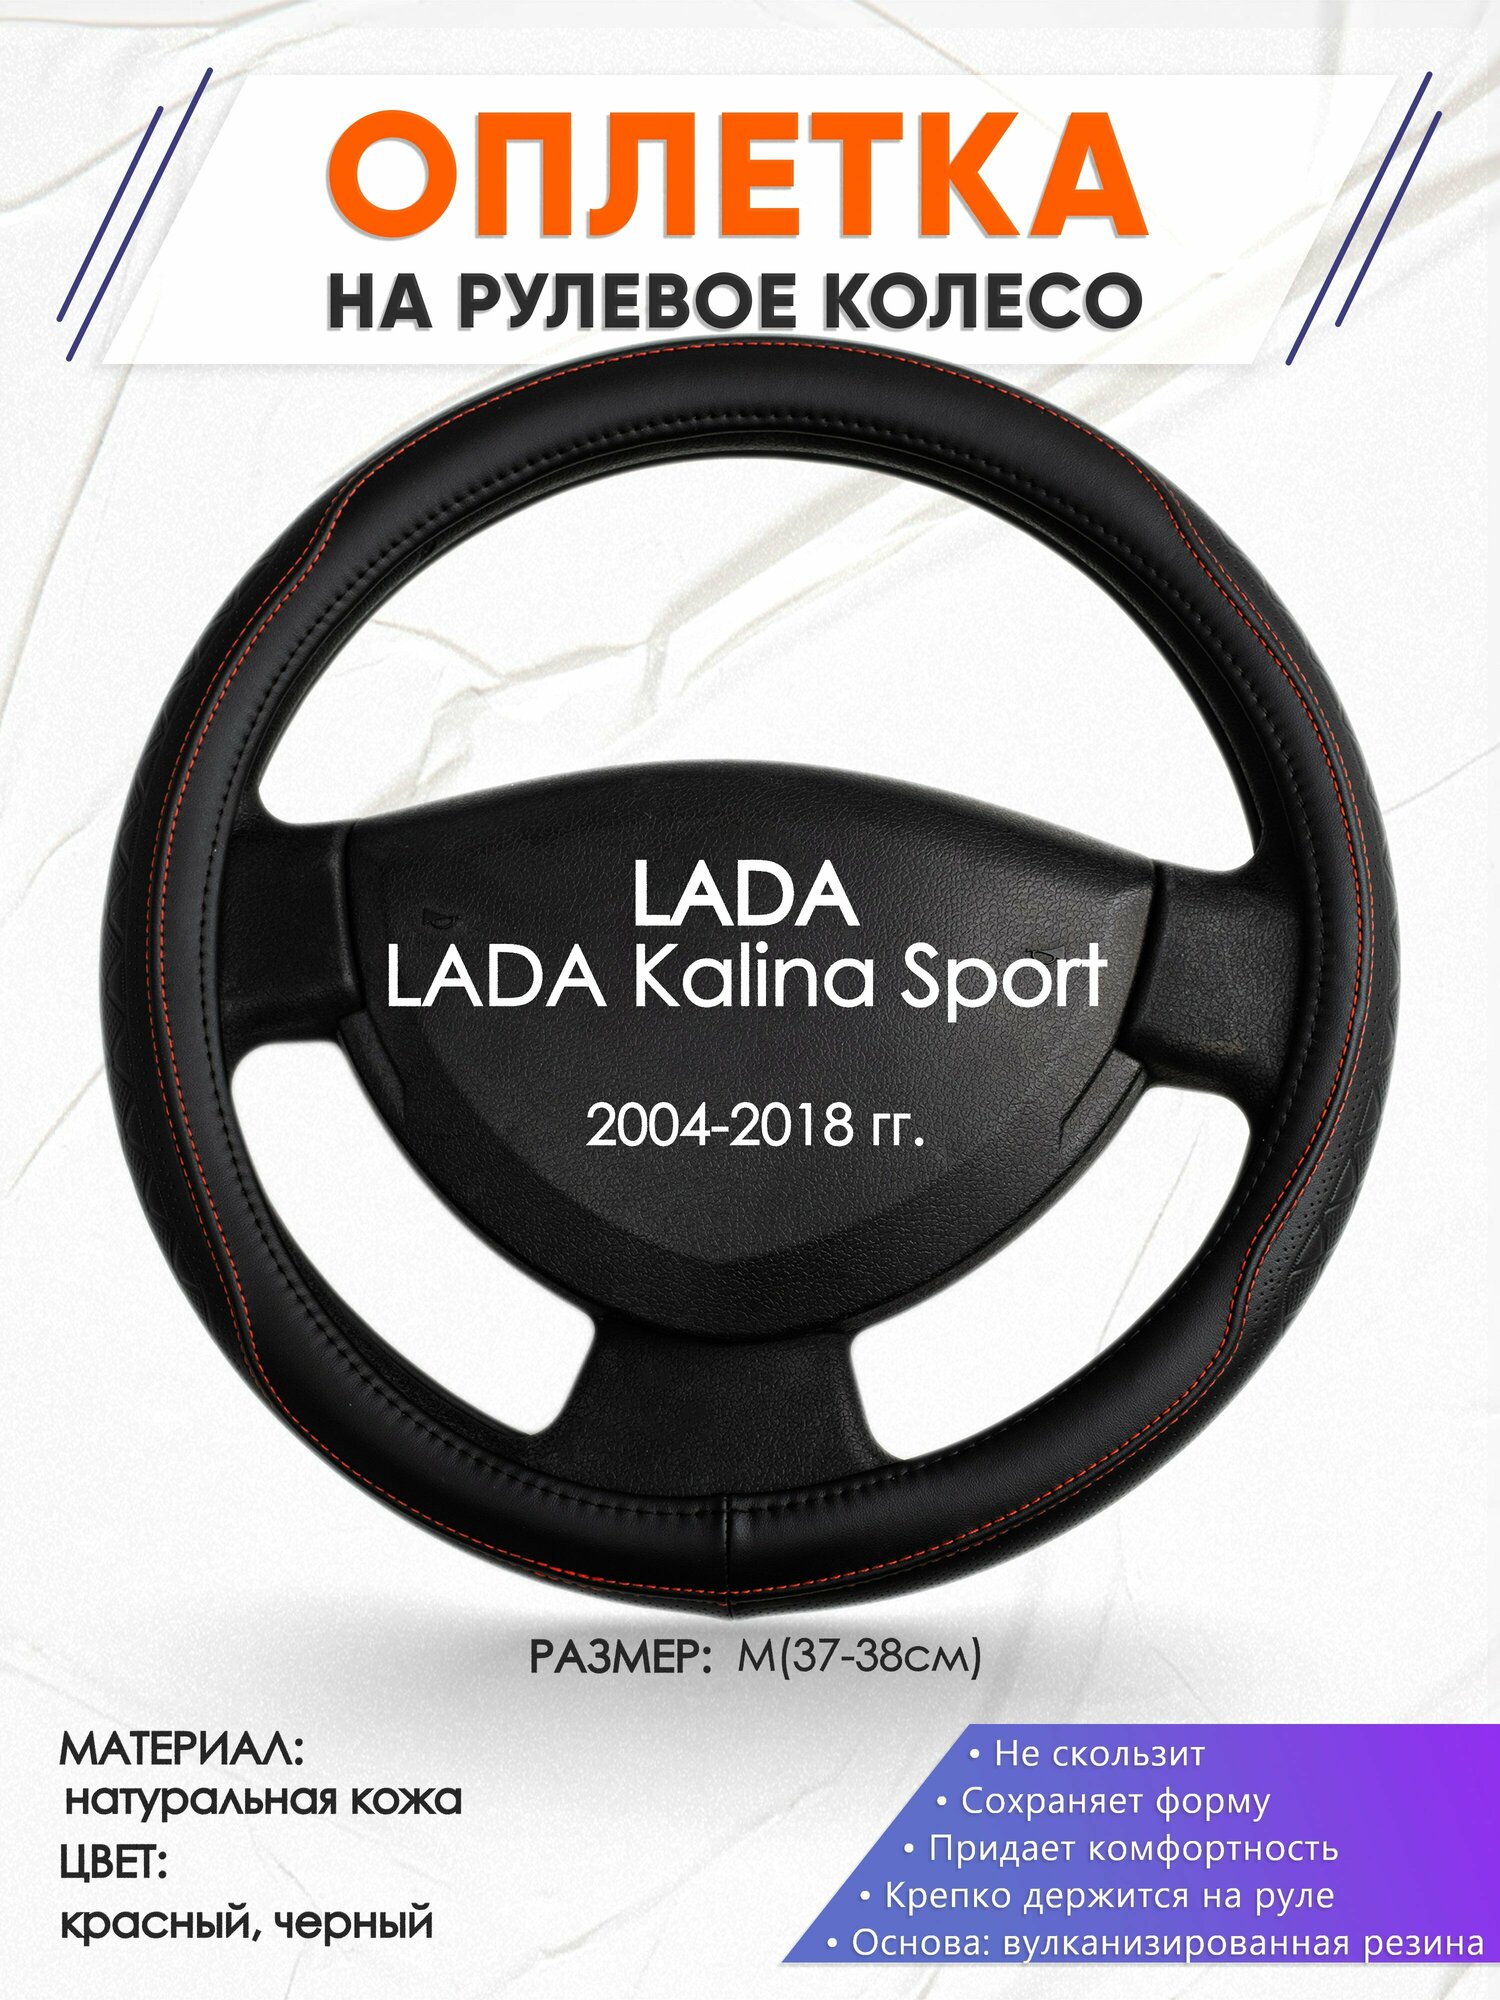 Оплетка наруль для LADA Kalina Sport(Лада Калина спорт) 2004-2018 годов выпуска, размер M(37-38см), Натуральная кожа 90